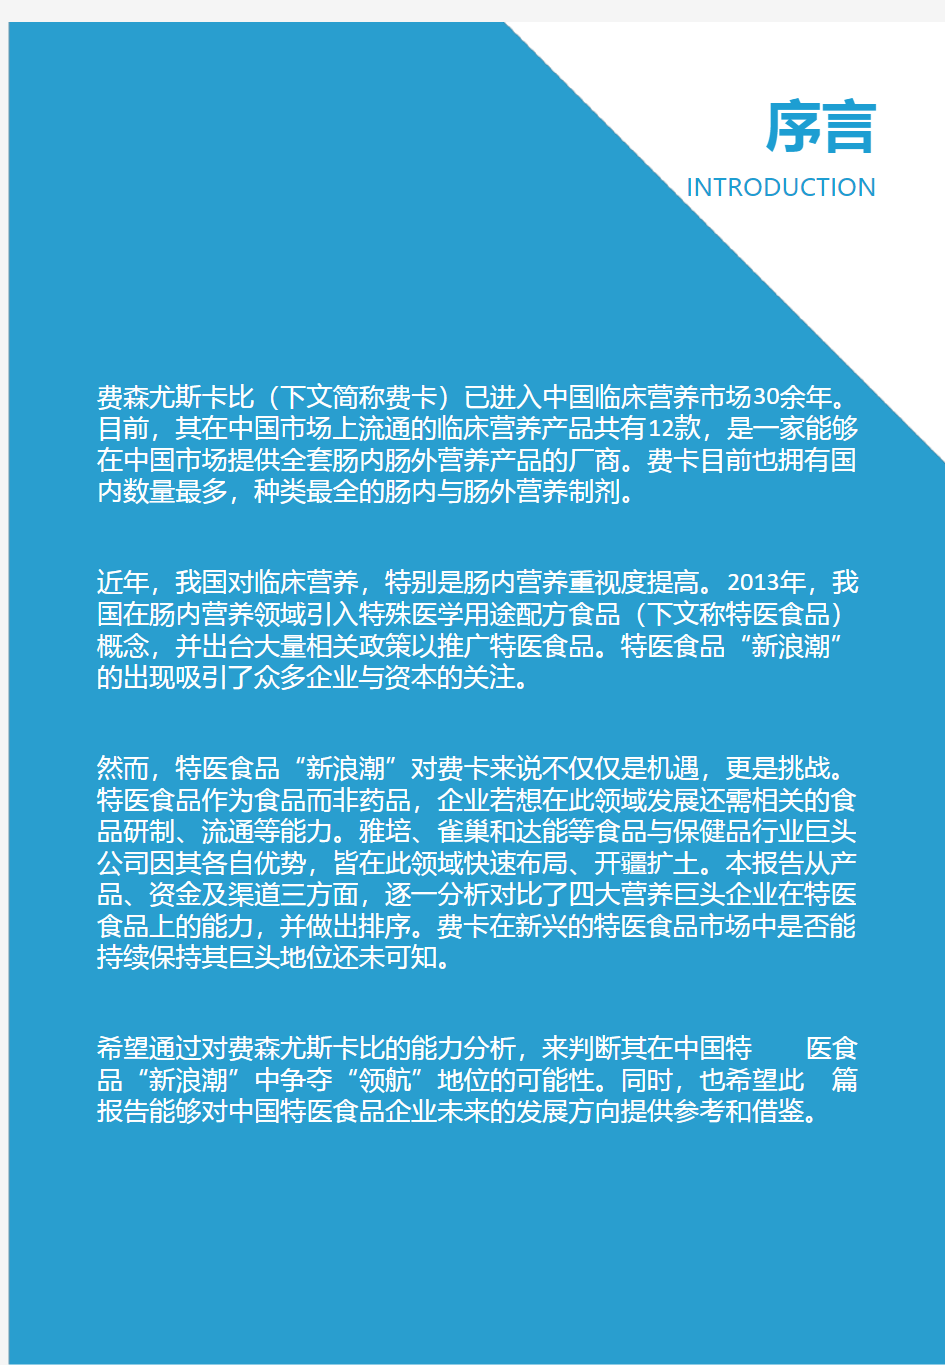 2020-2021年费森尤斯卡比中国临床营养业务研究报告